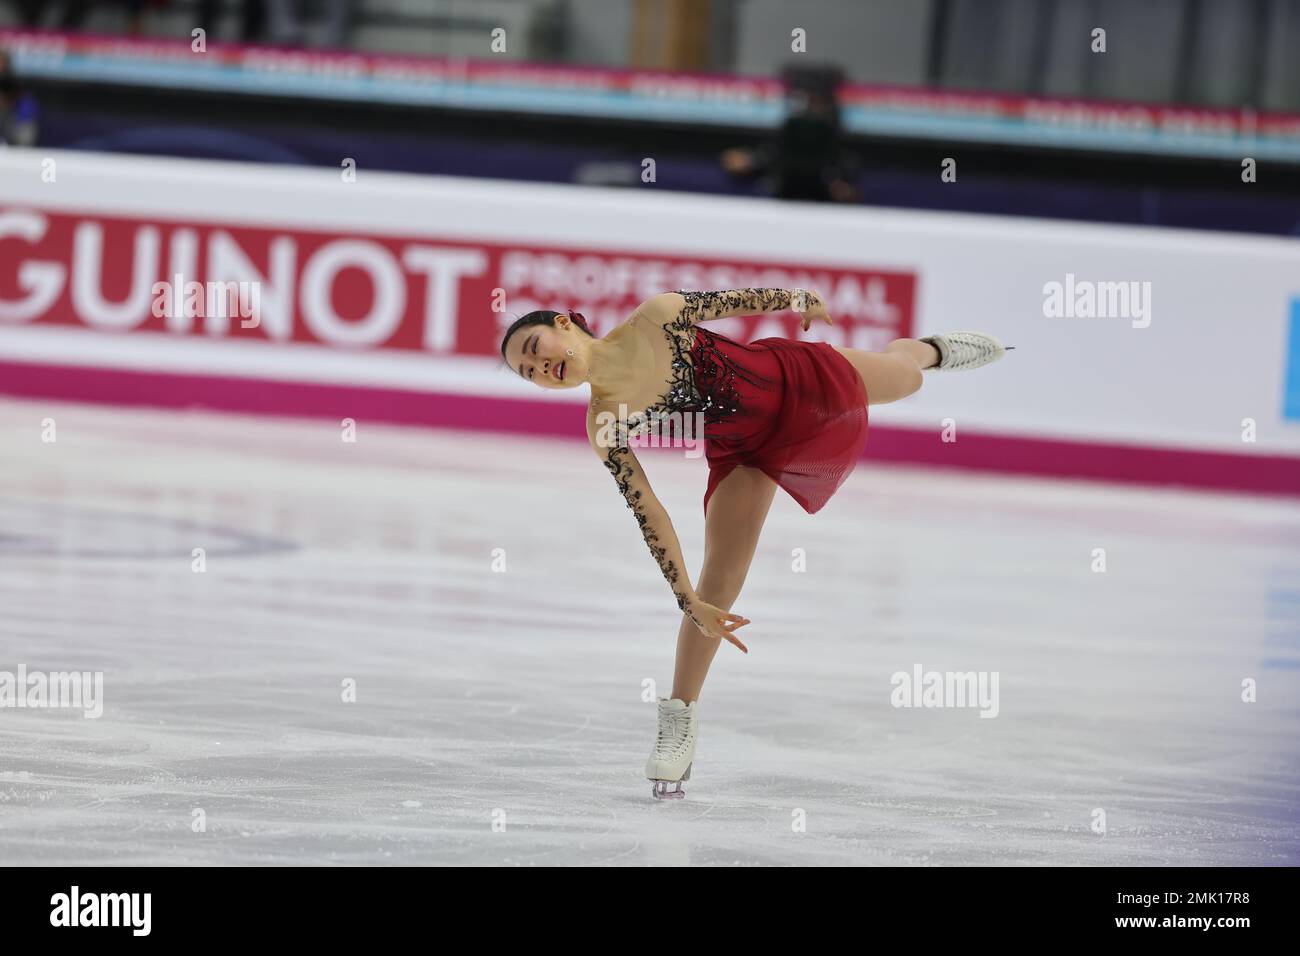 Mai Mihara du Japon participe à la finale du Grand Prix de patinage artistique de l'UIP à Turin 2022 à Palavela. Banque D'Images